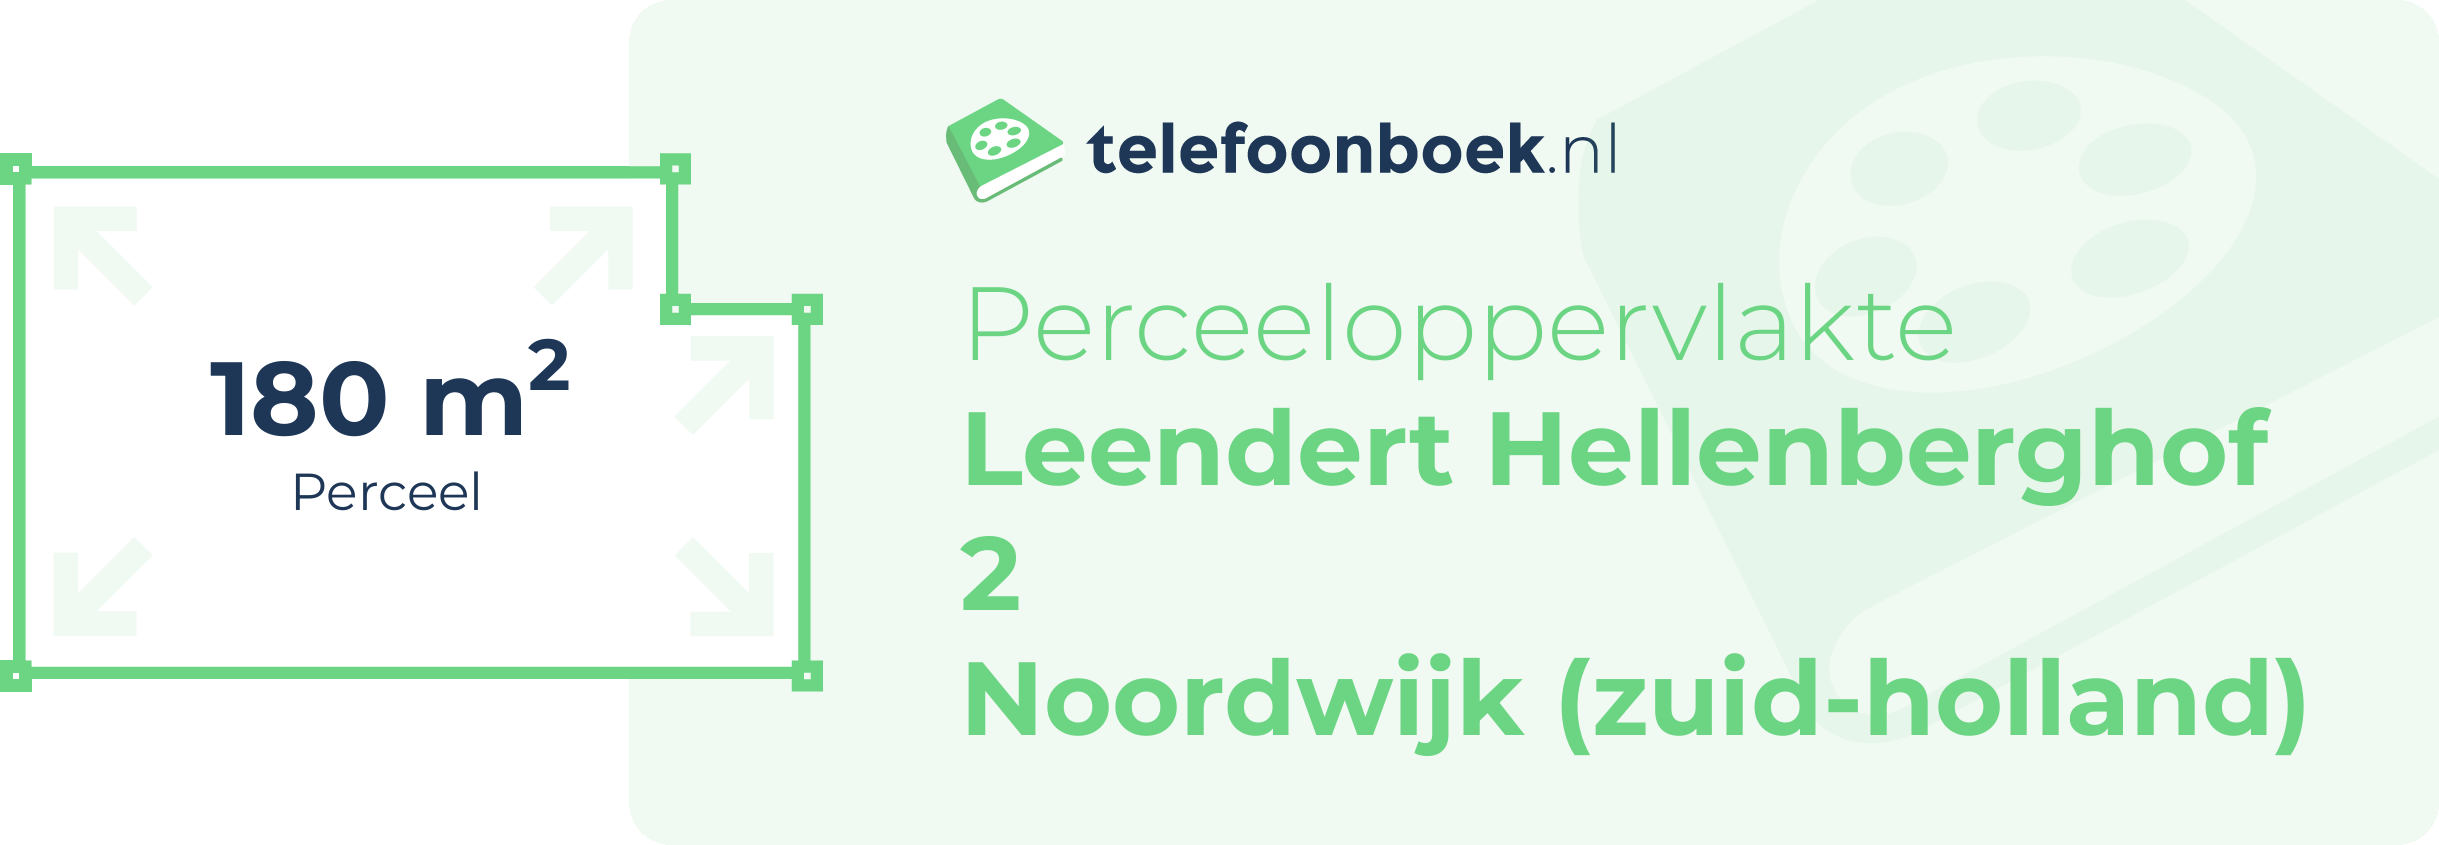 Perceeloppervlakte Leendert Hellenberghof 2 Noordwijk (Zuid-Holland)